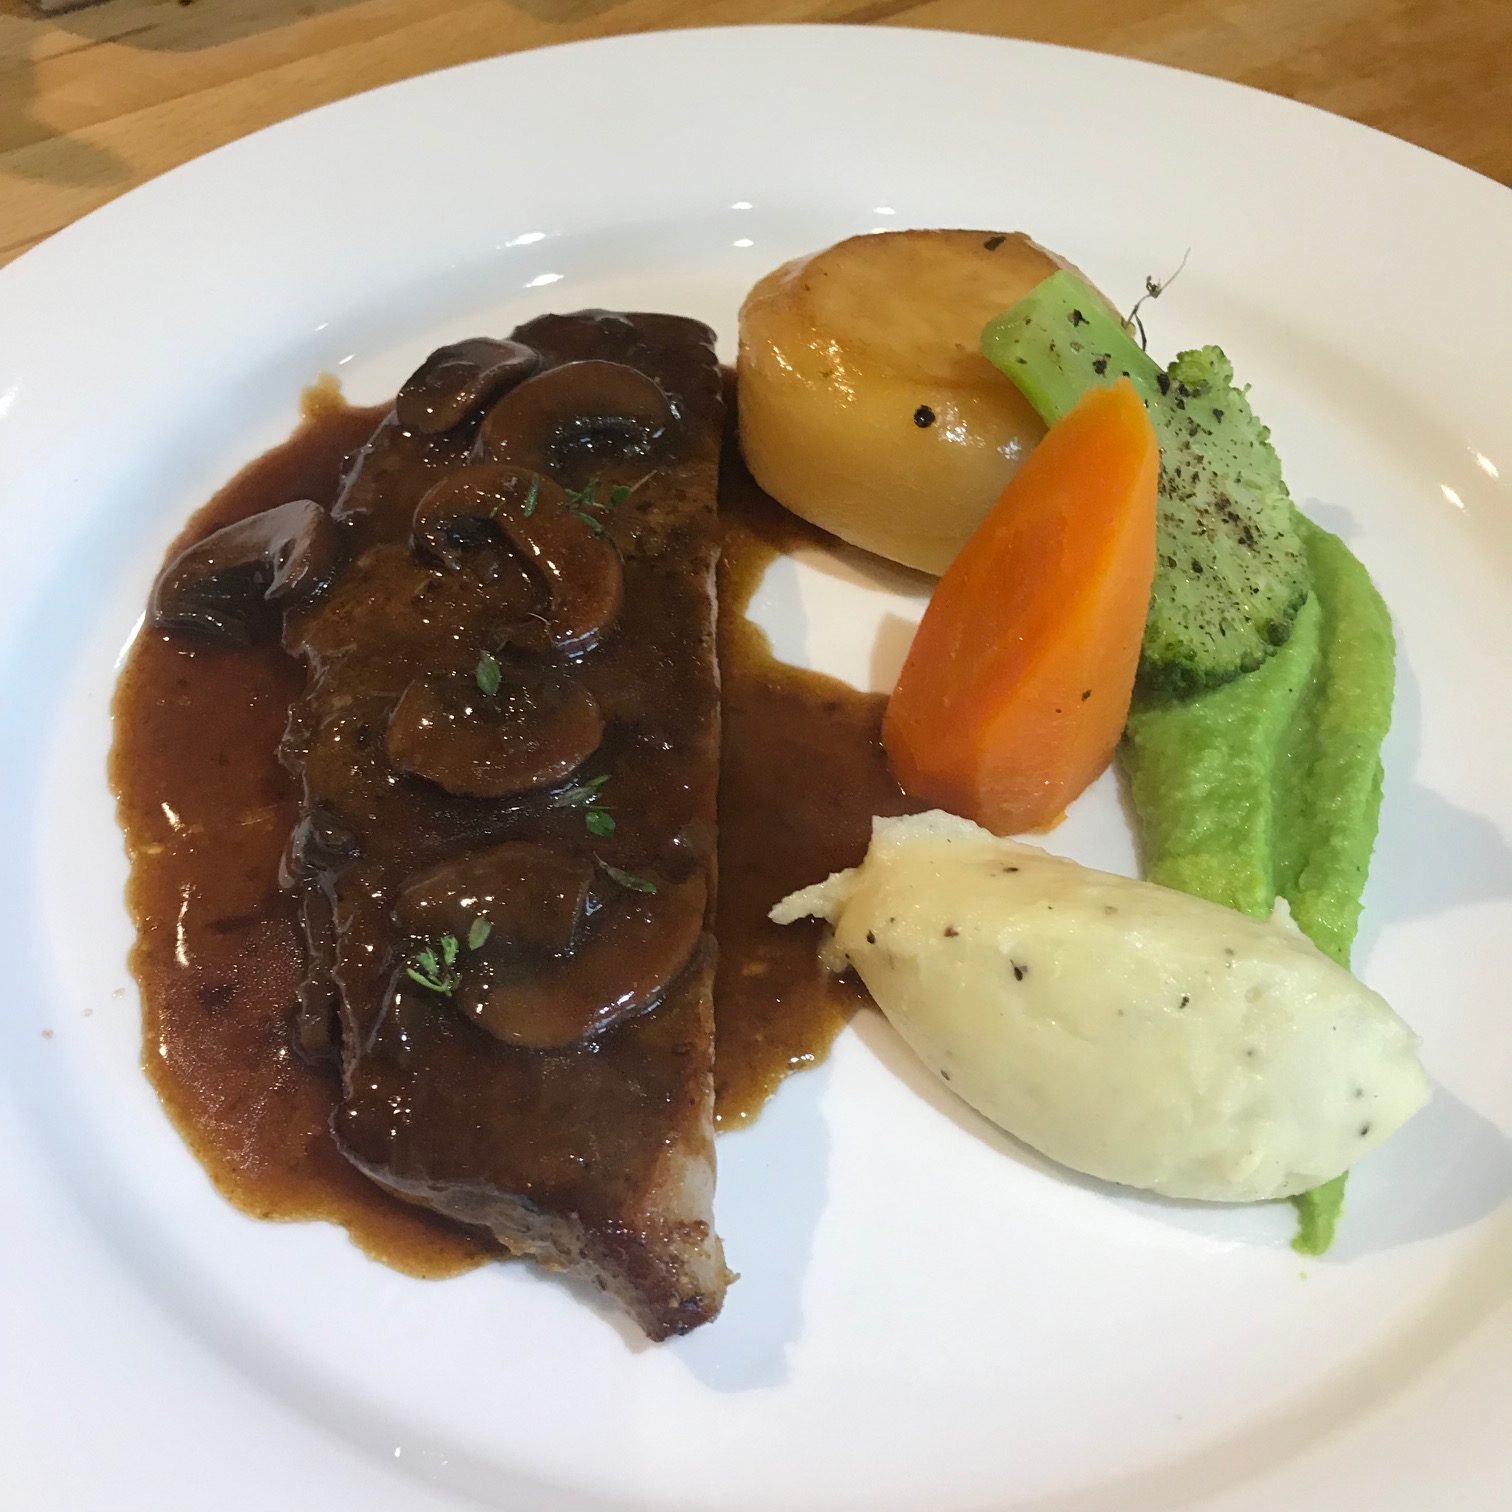 20190816 - Sirloin Steak with Bordelaise Sauce